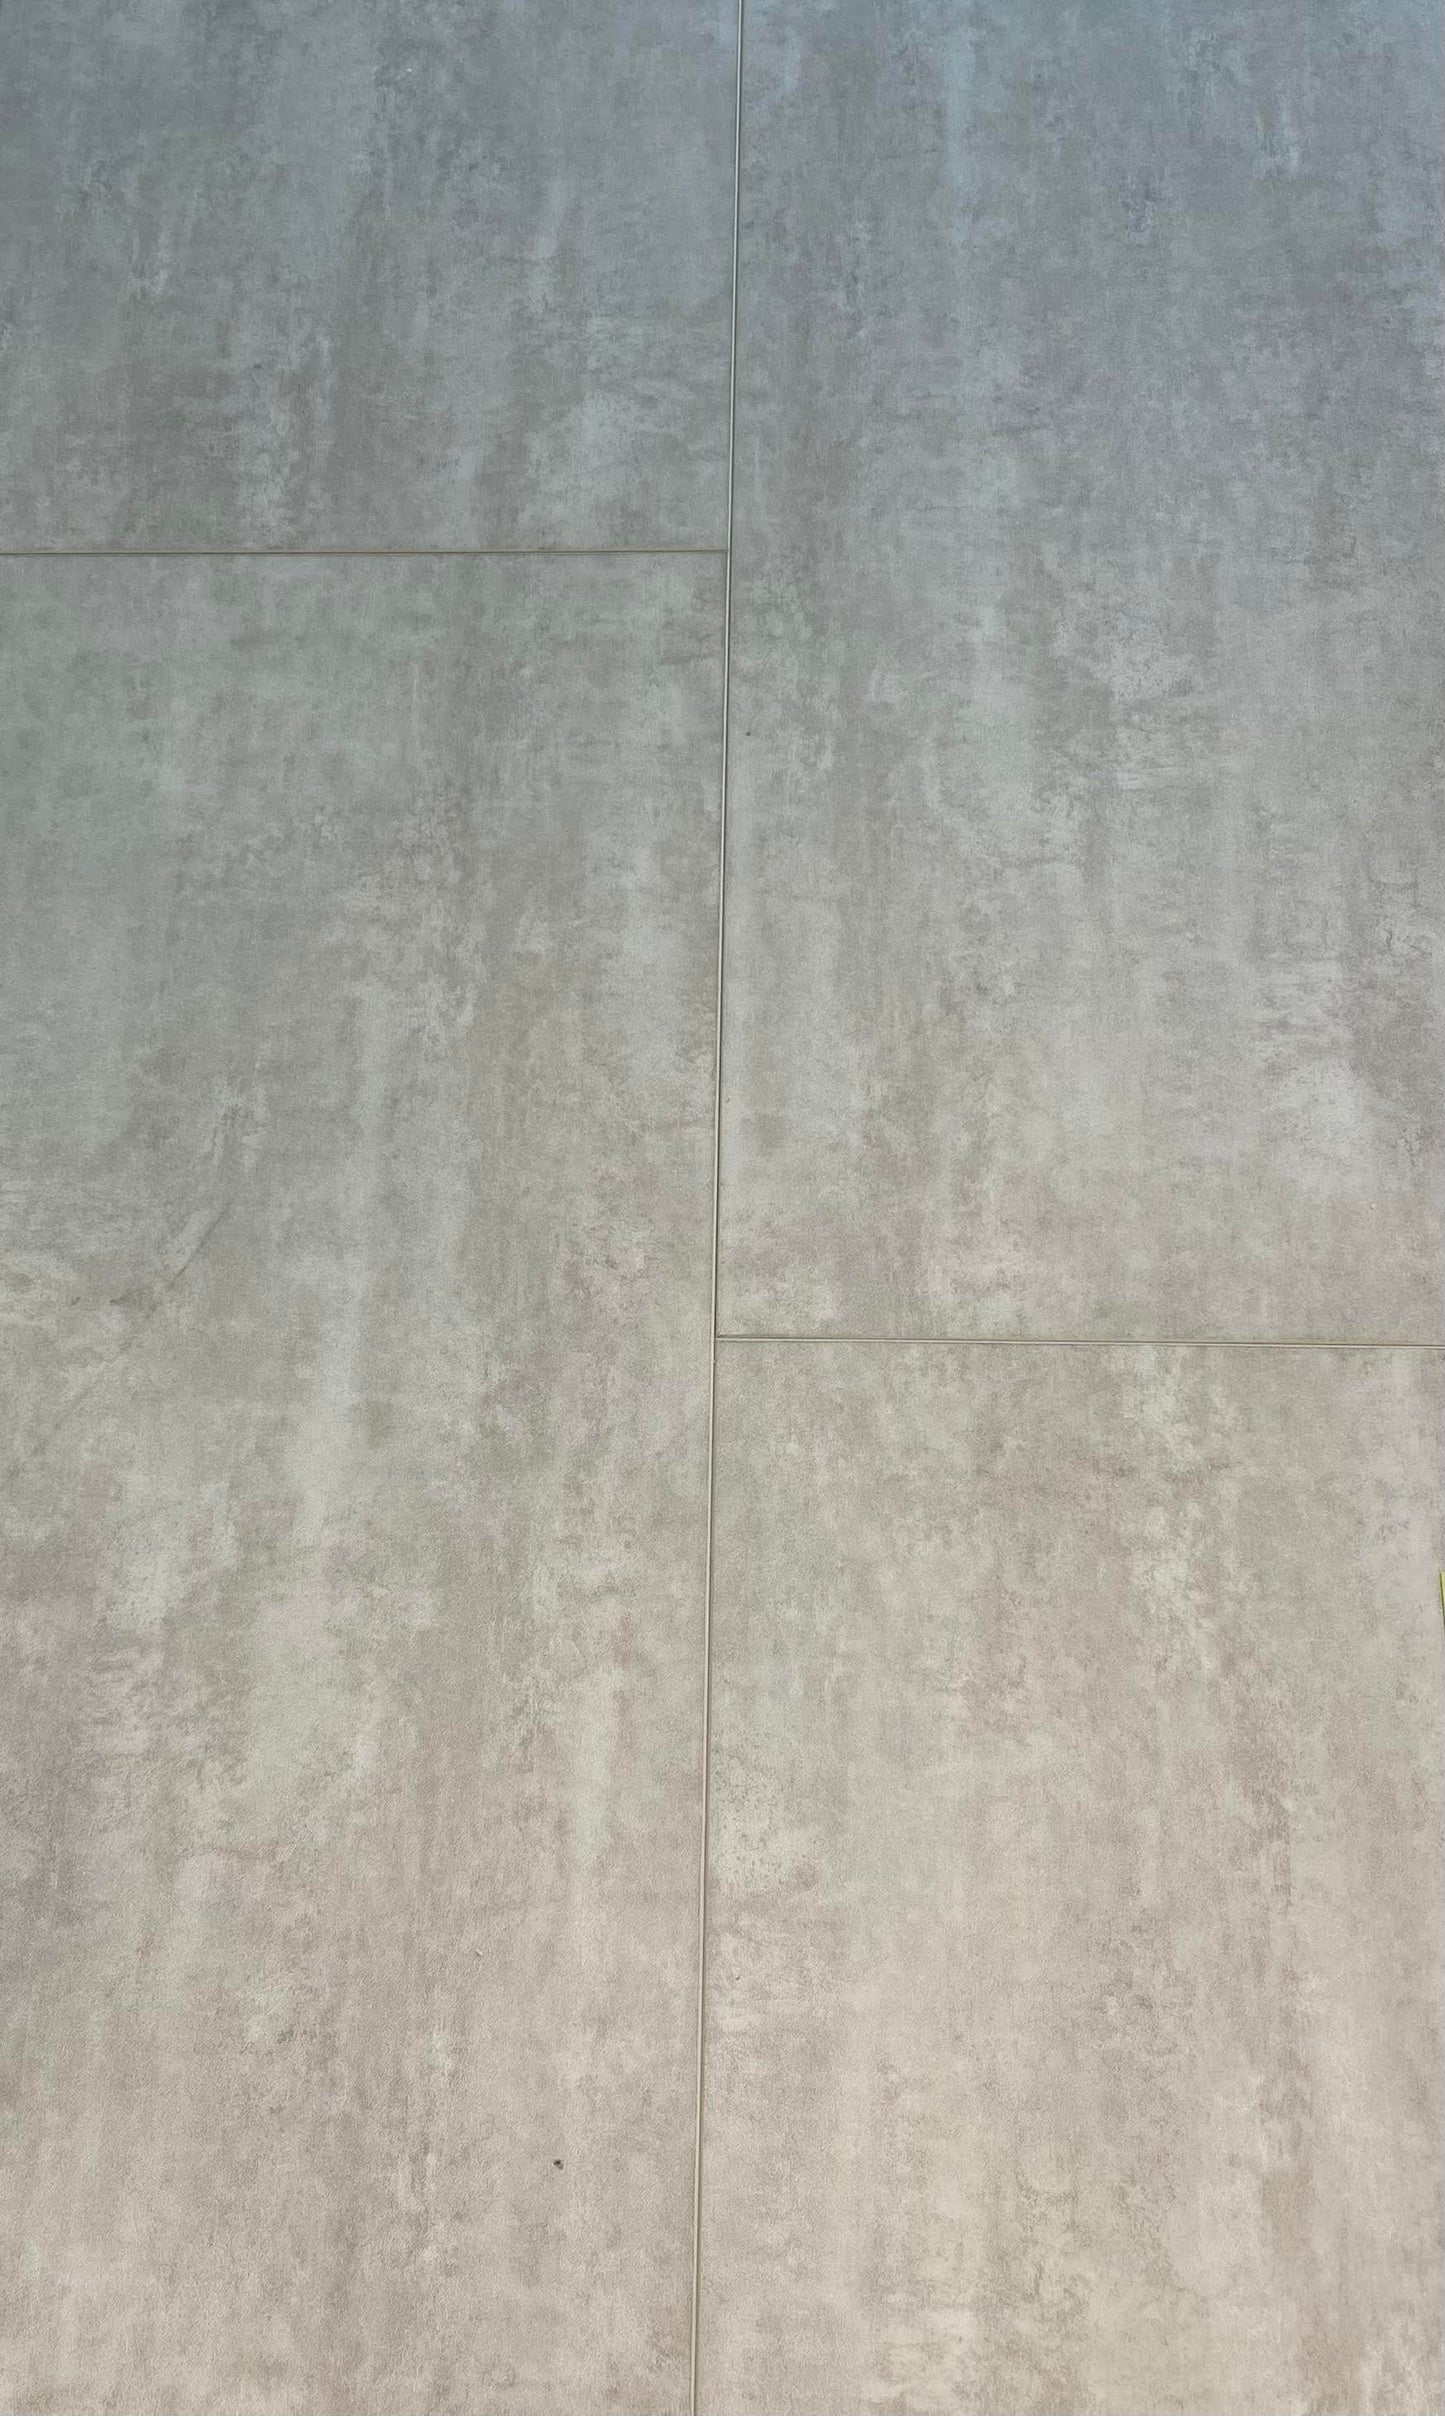 12"x24" Adak Concrete Tile (pad attached) $2.87/sf 15.5 sf/box